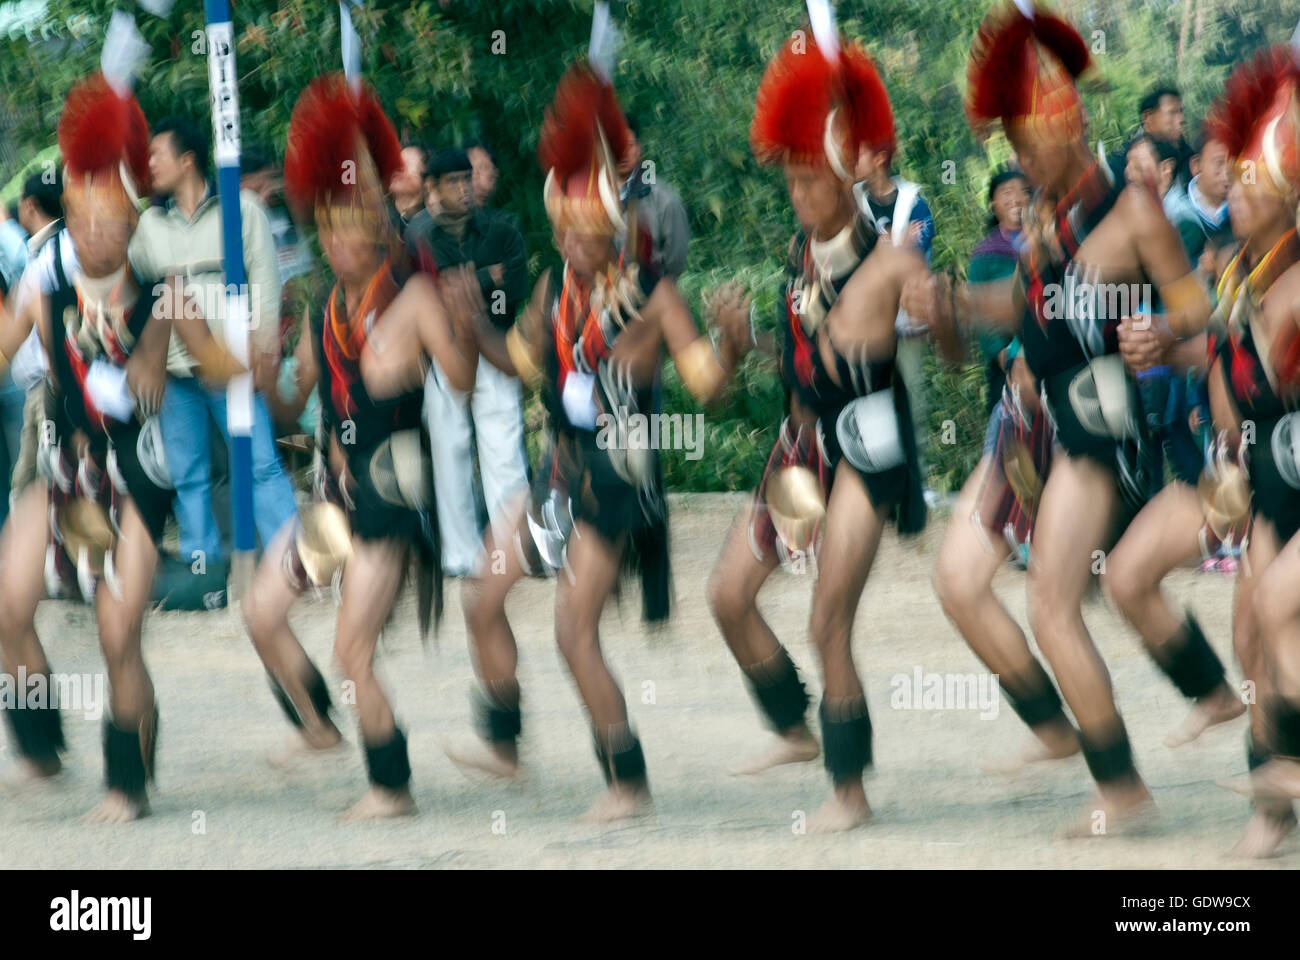 Das Bild des Khiamniungan Naga tanzen Hornbill Festival, Nagaland, Indien Stockfoto